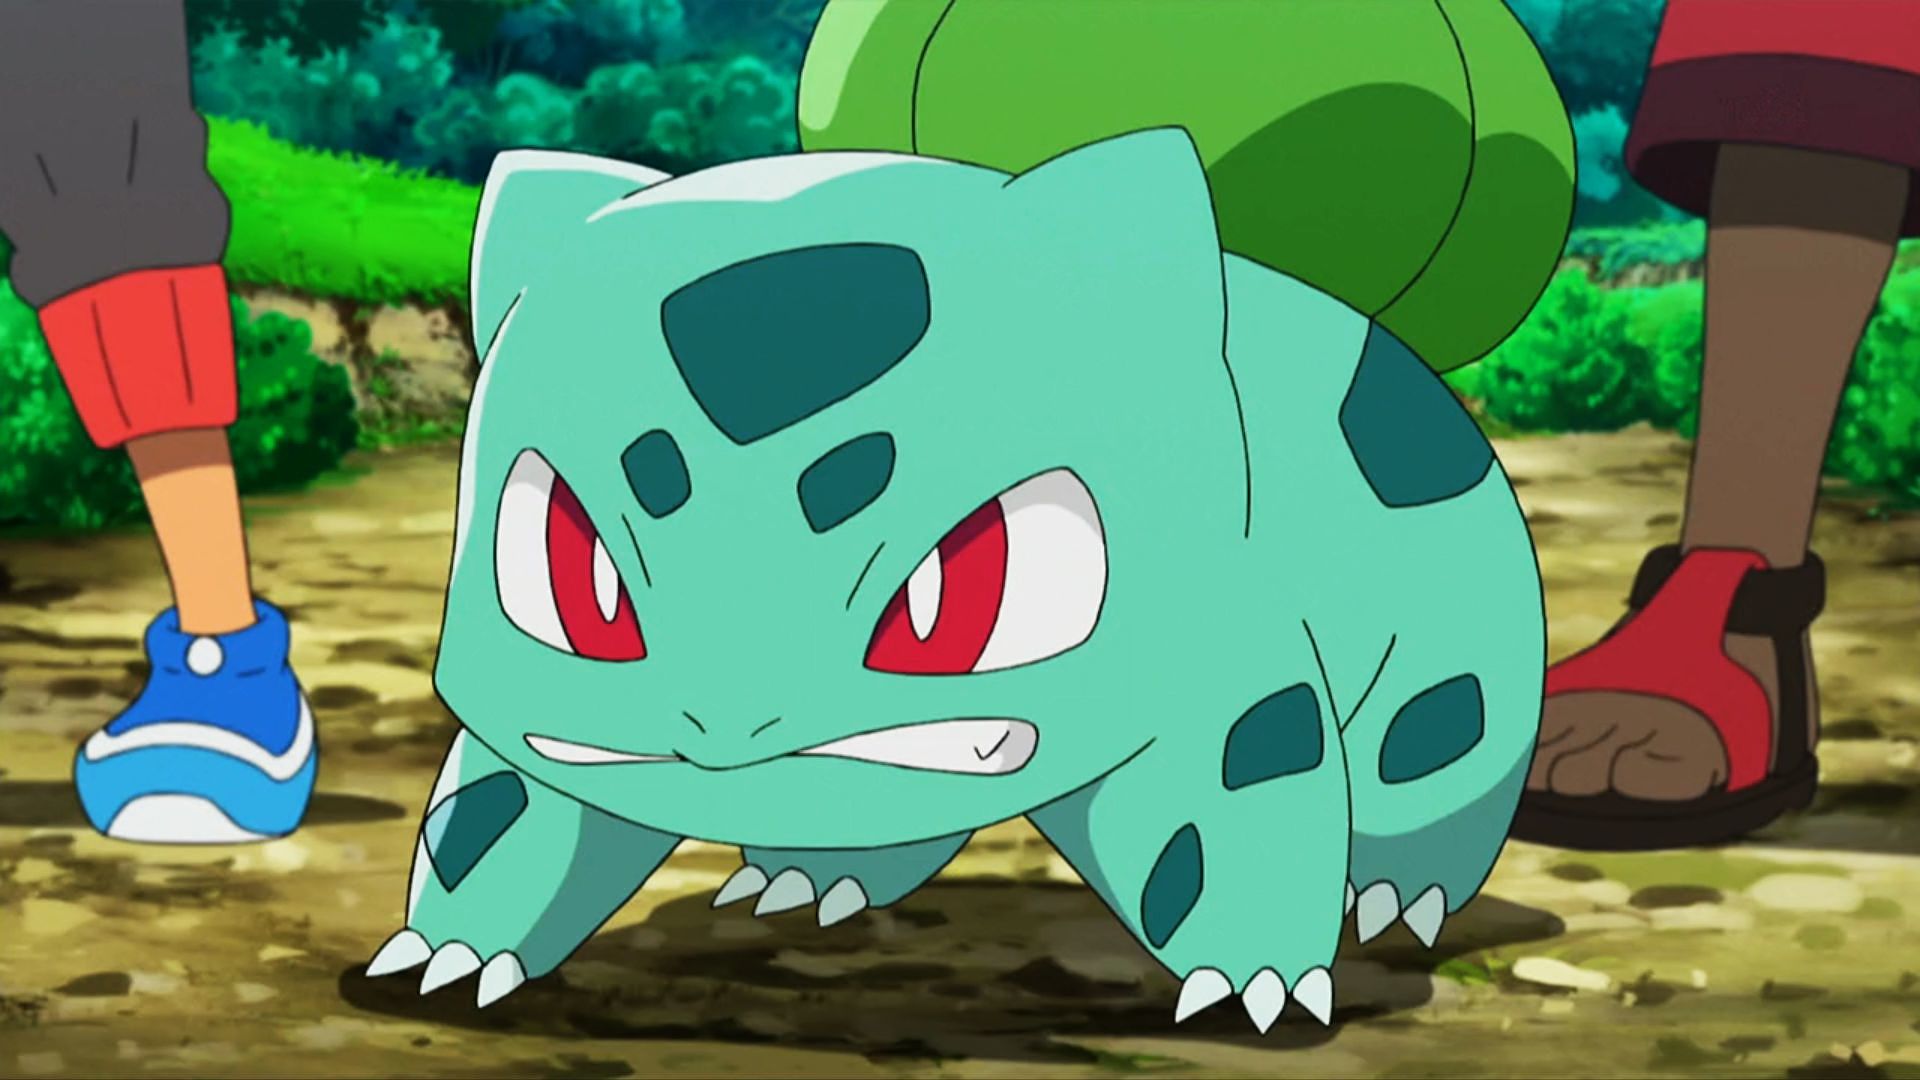 Pokémon Go Community Day Bulbasaur Release Date